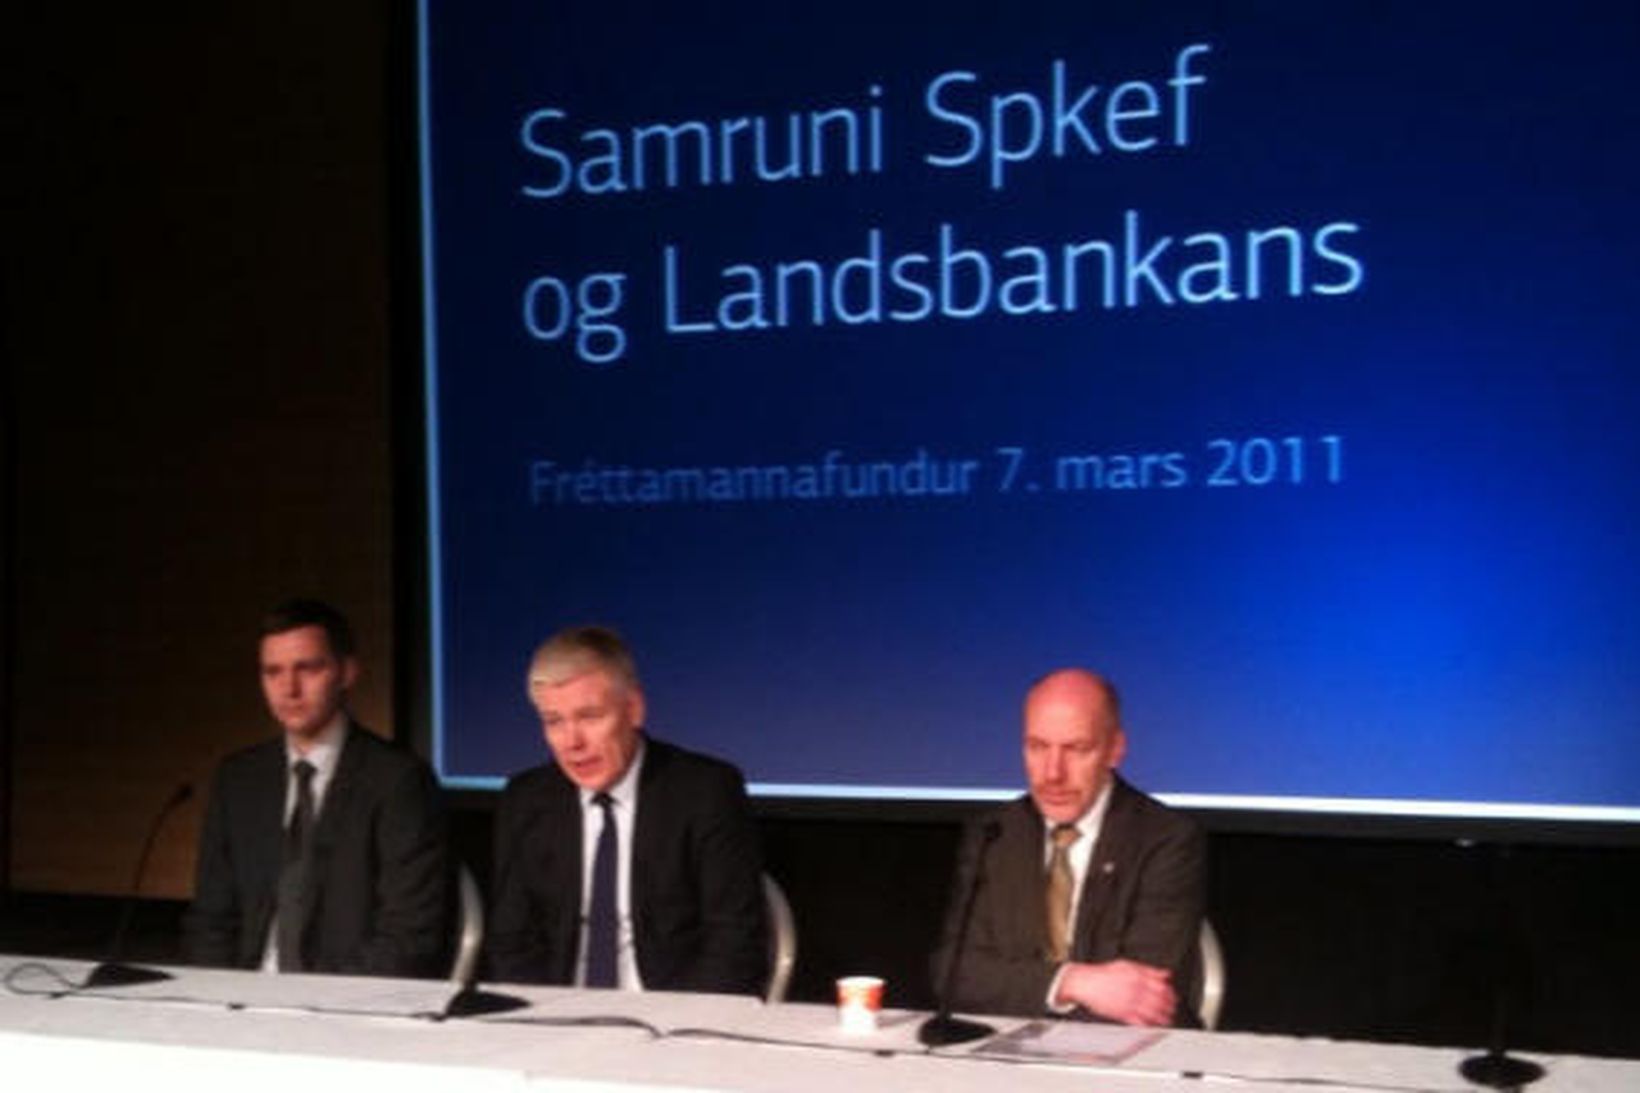 Samruni SpKef og Landsbankans var kynntur á blaðamannafundi í Reykjanesbæ …